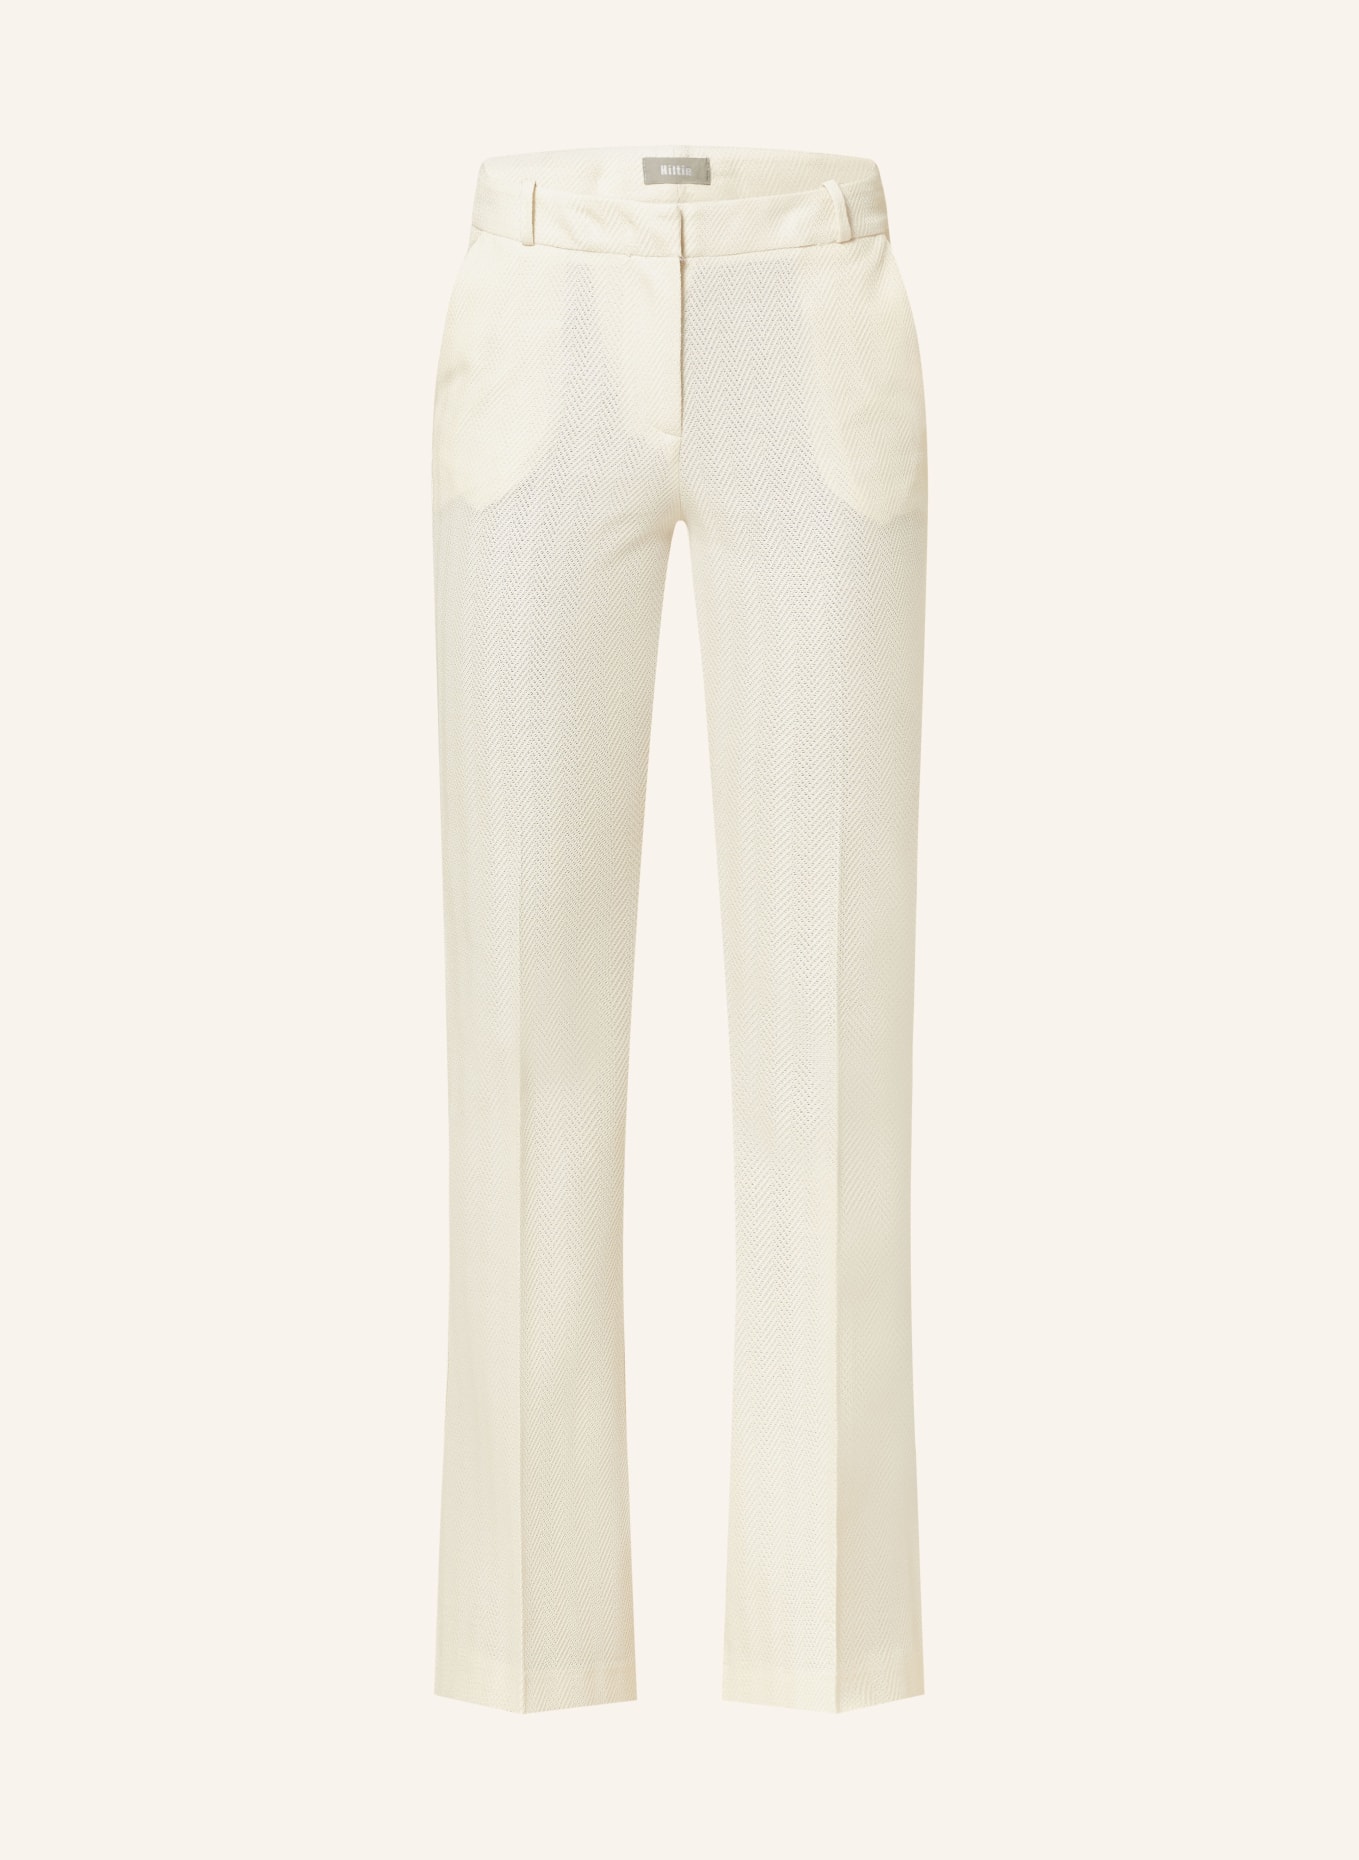 Kiltie Trousers, Color: ECRU (Image 1)